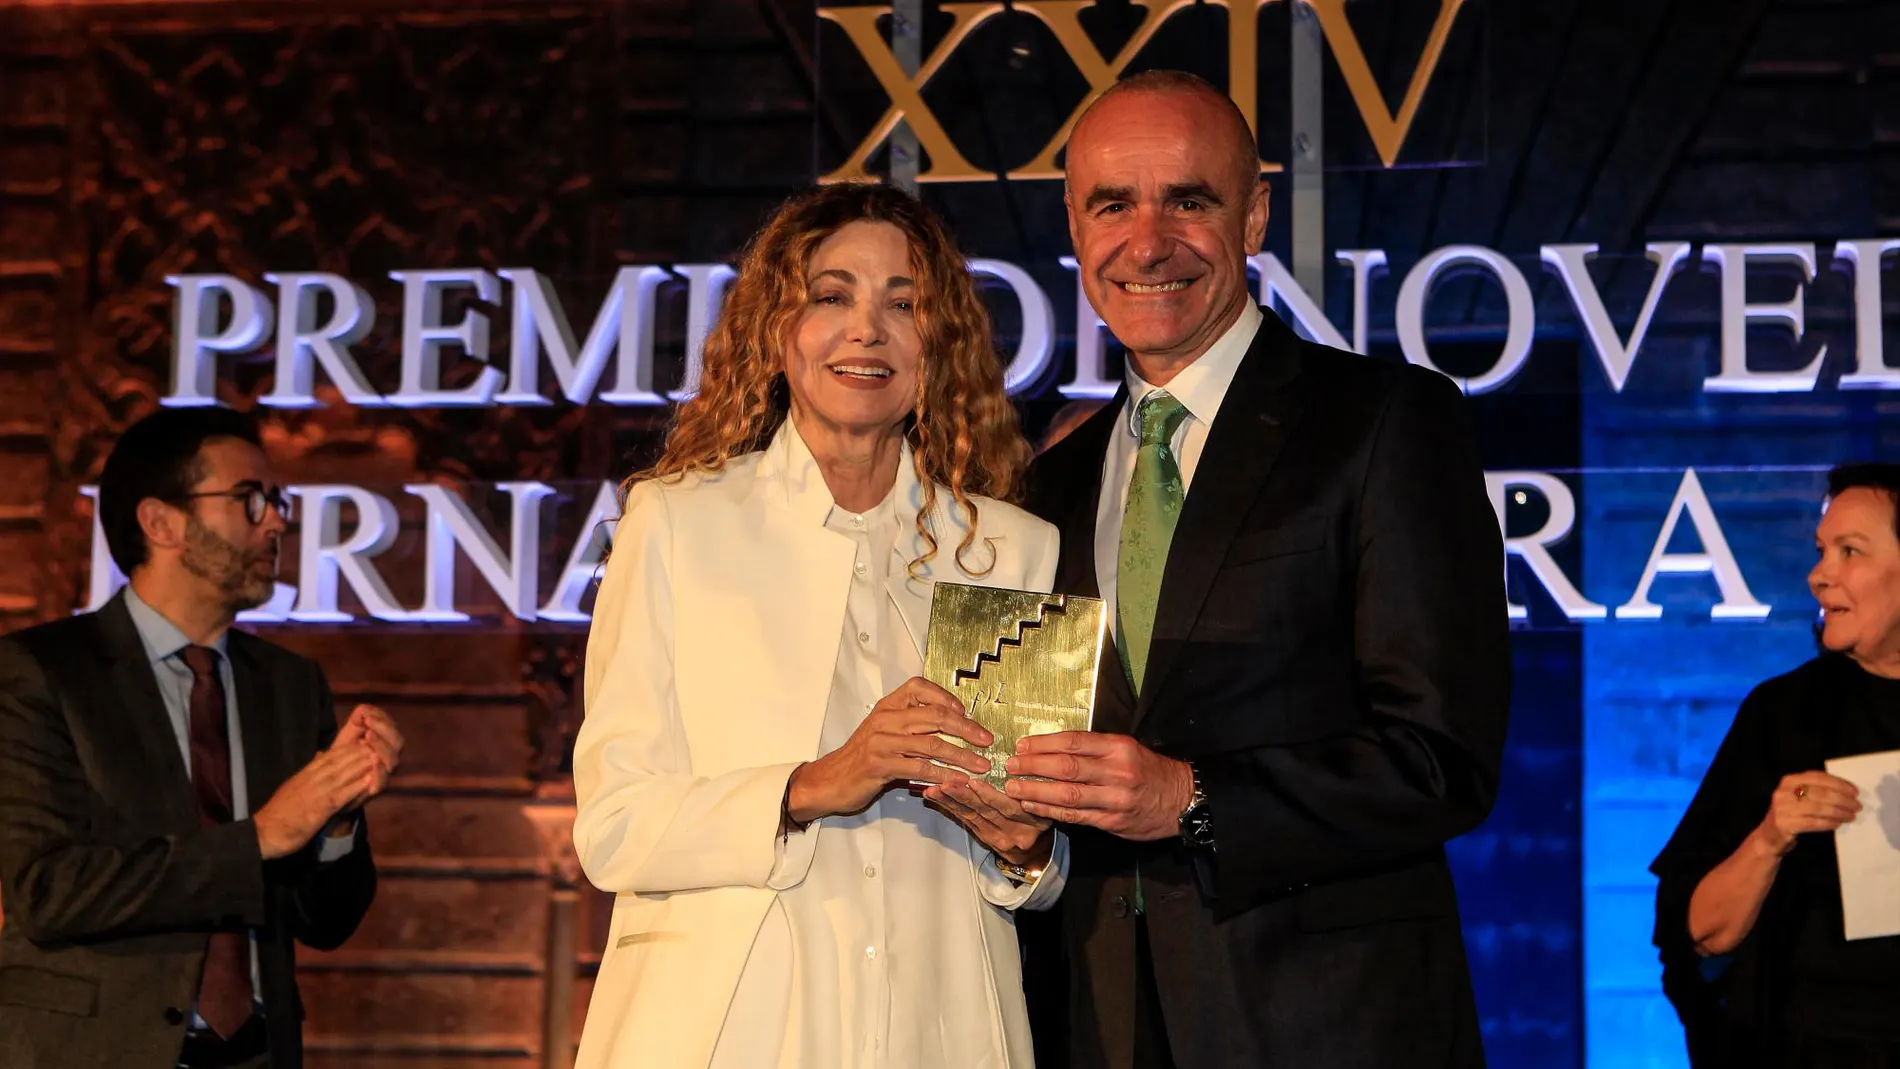 La escritora recibe el premio de manos de Antonio Muñoz delegado de cultura del Ayuntamiento de Sevilla. Foto: Manuel Olmedo